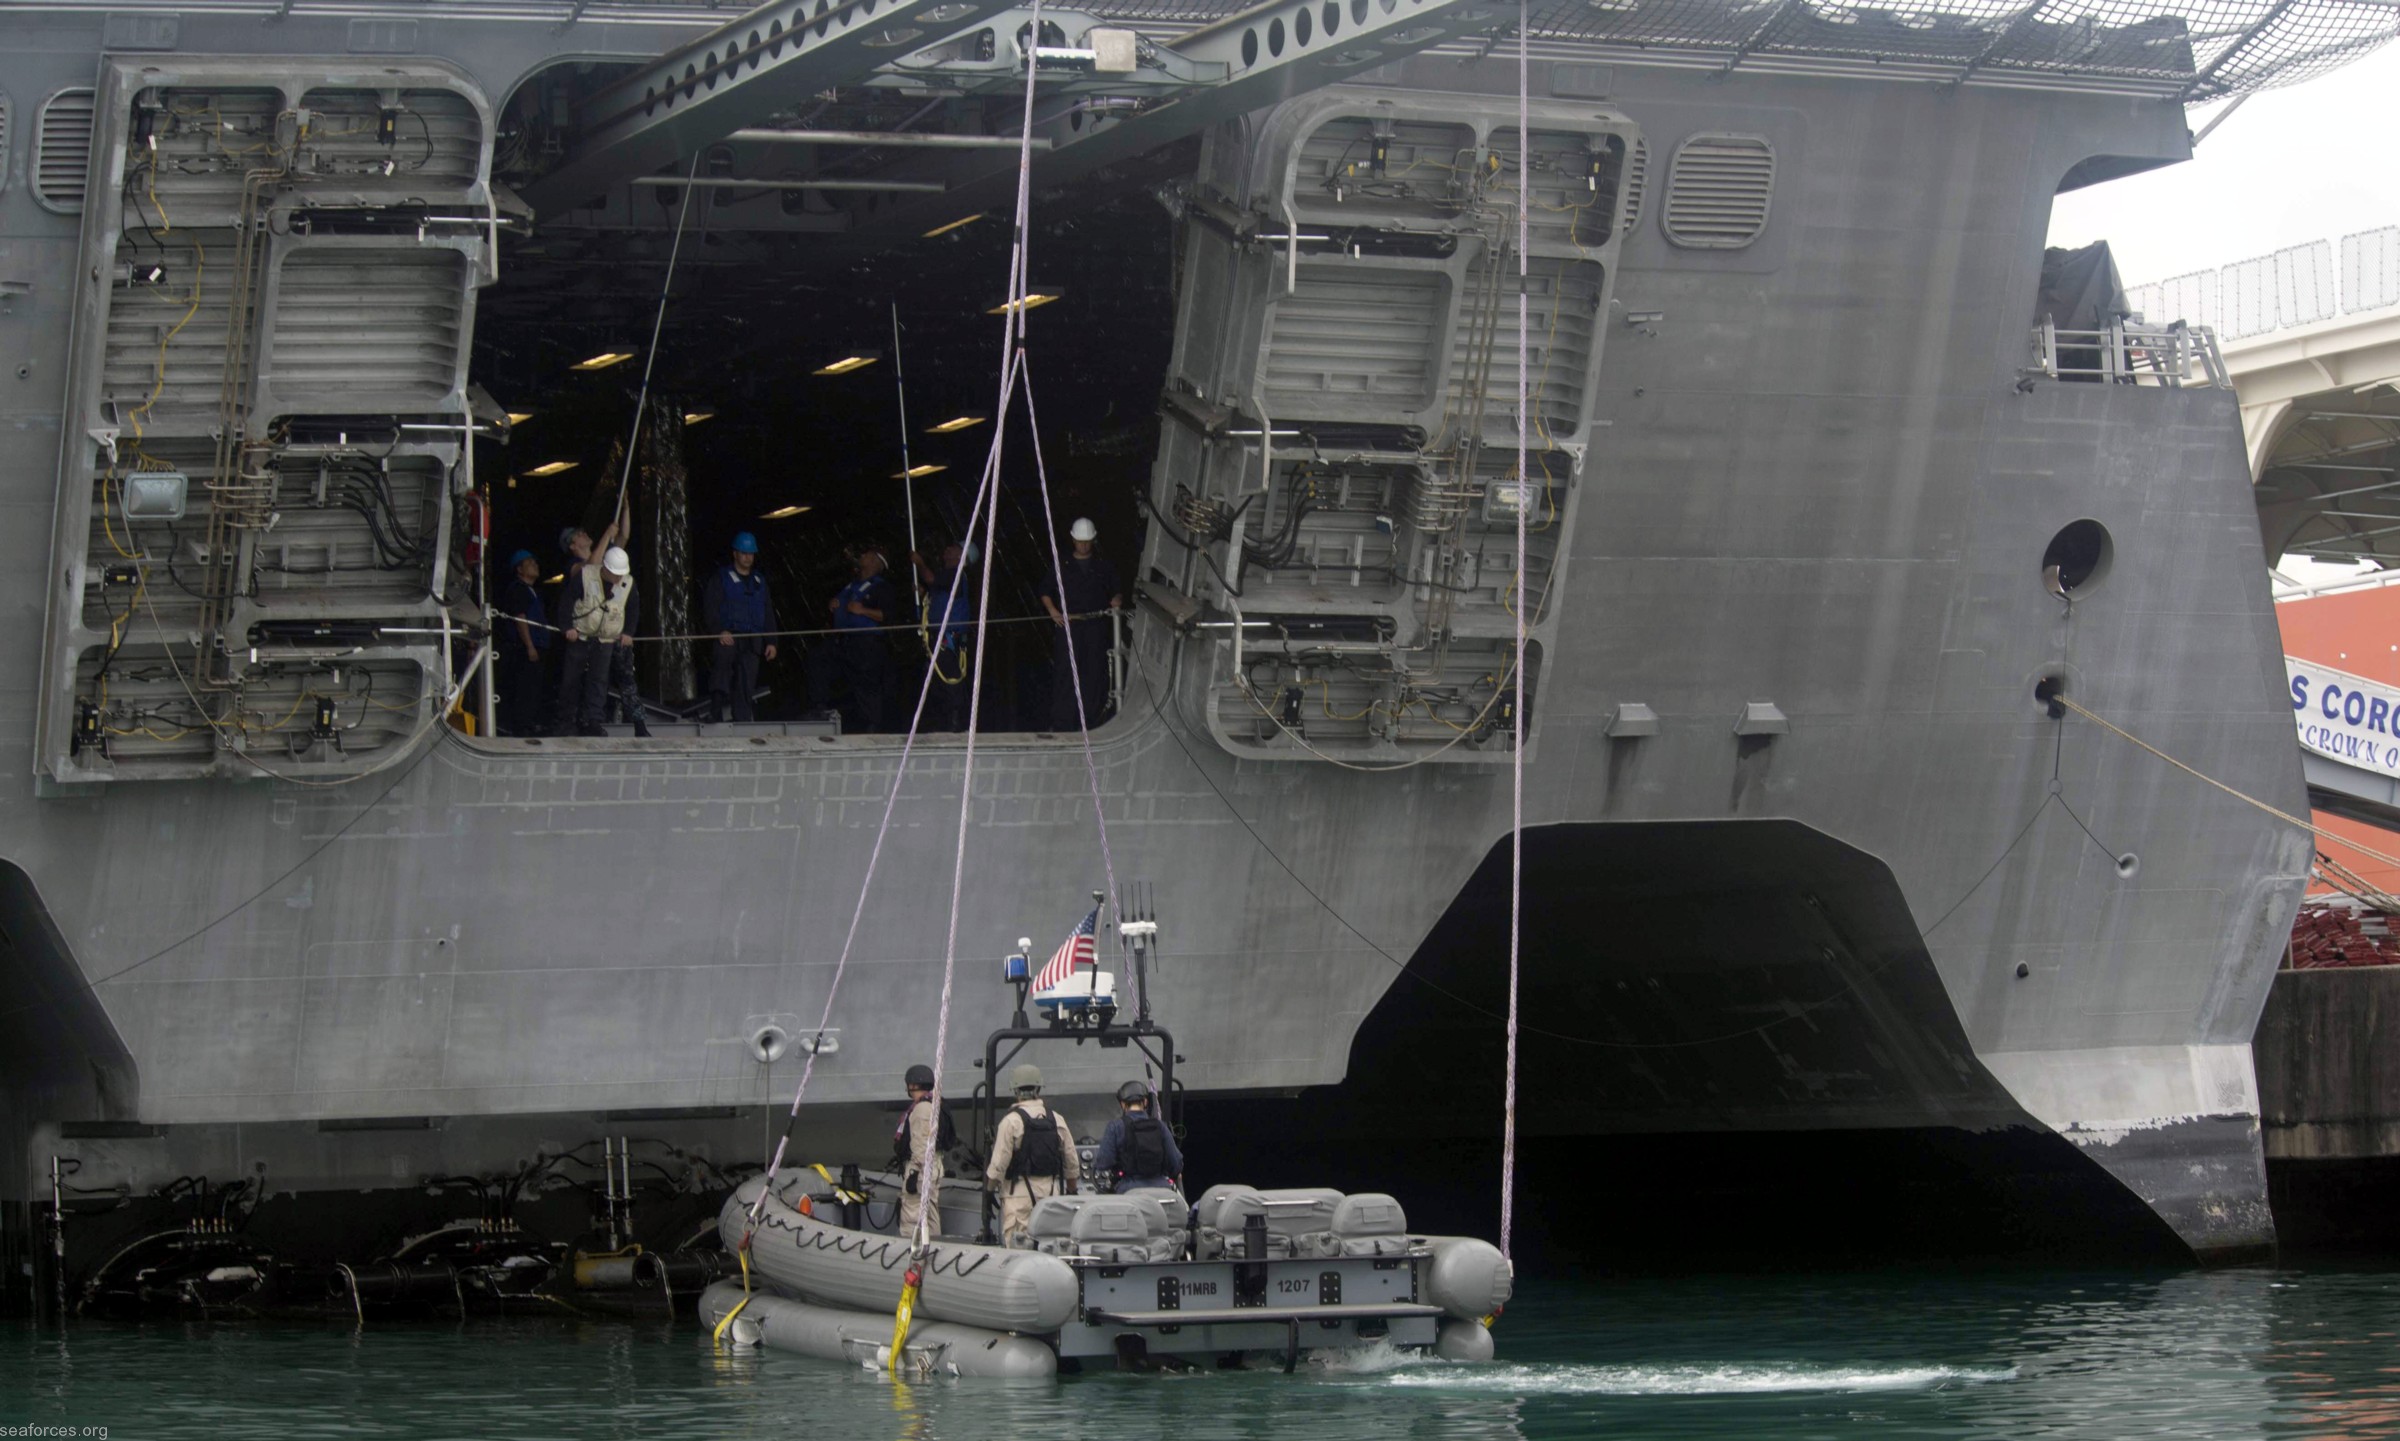 فئة الاستقلال سفينة قتالية ساحلية تابعة للبحرية الأمريكية عمليات الضلع 03c البحرية